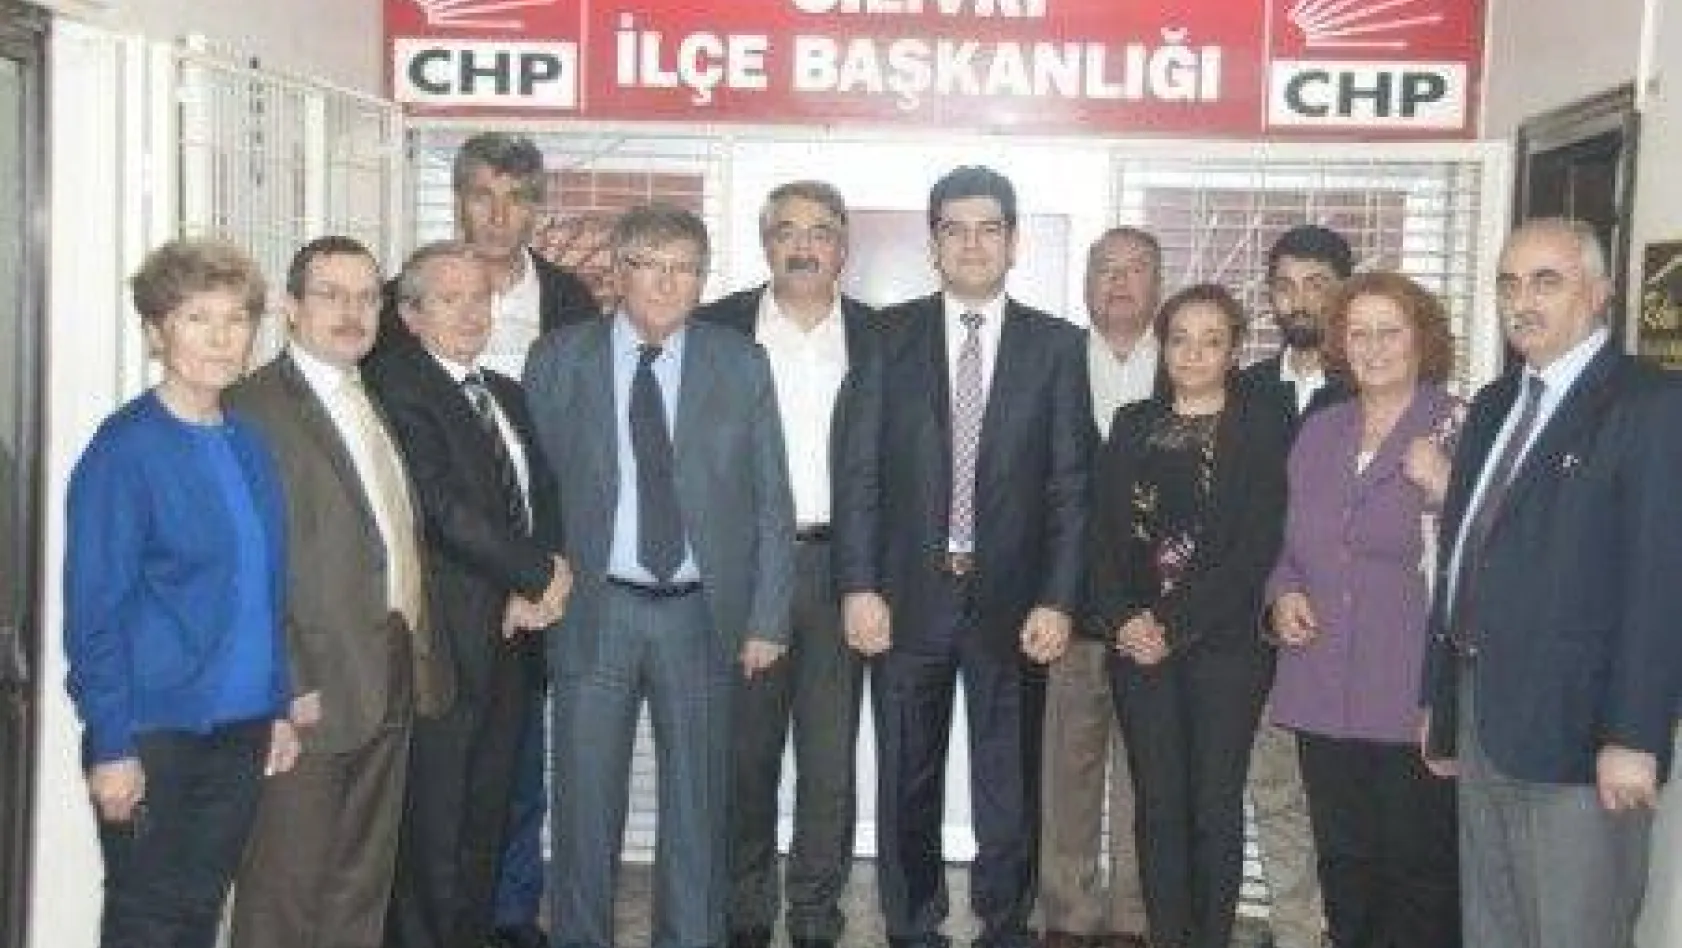 CHP Silivri'ye tebrik ziyaretleri devam ediyor